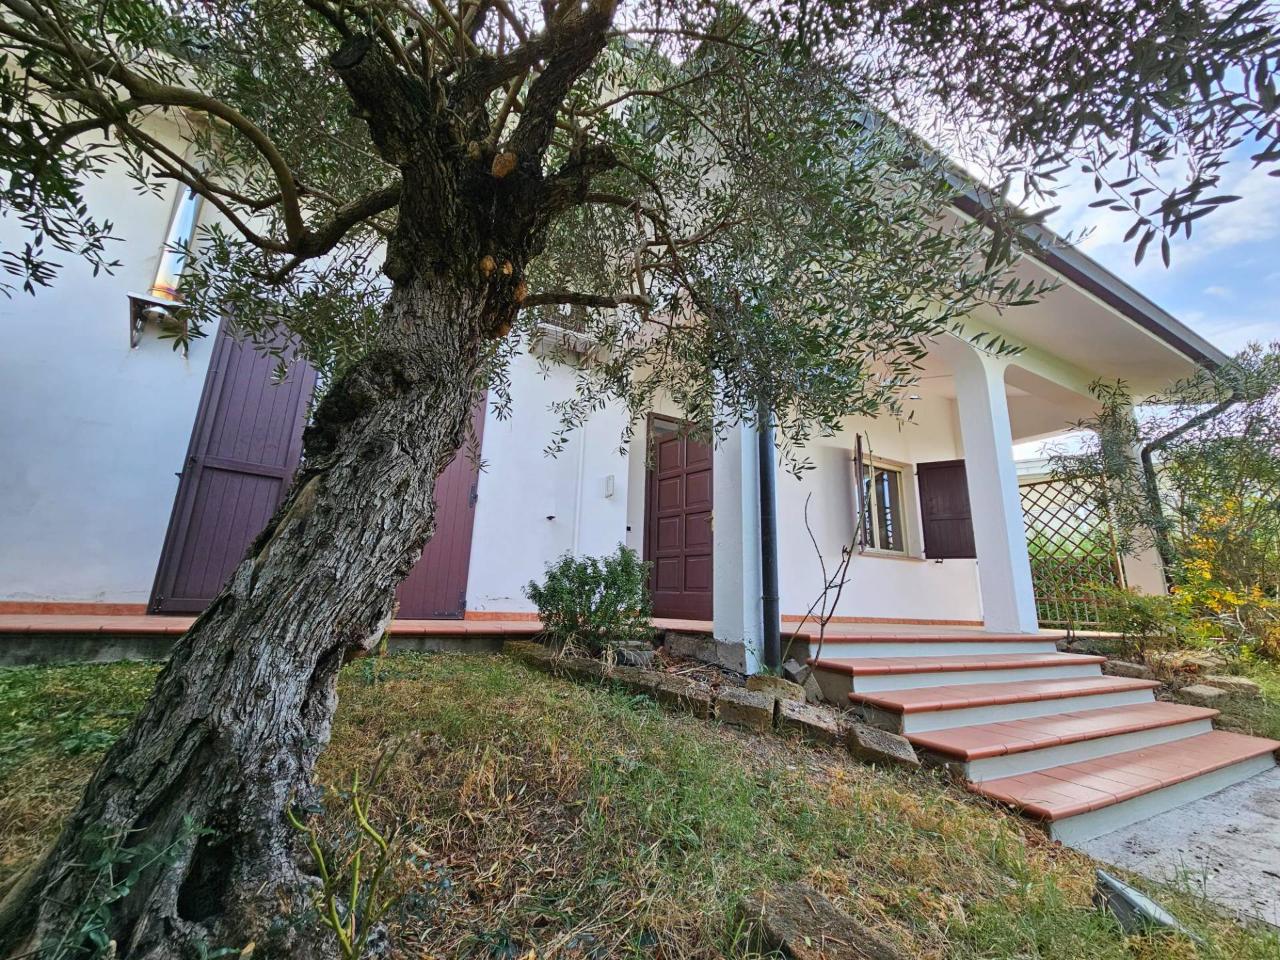 Villa in vendita a Medolla